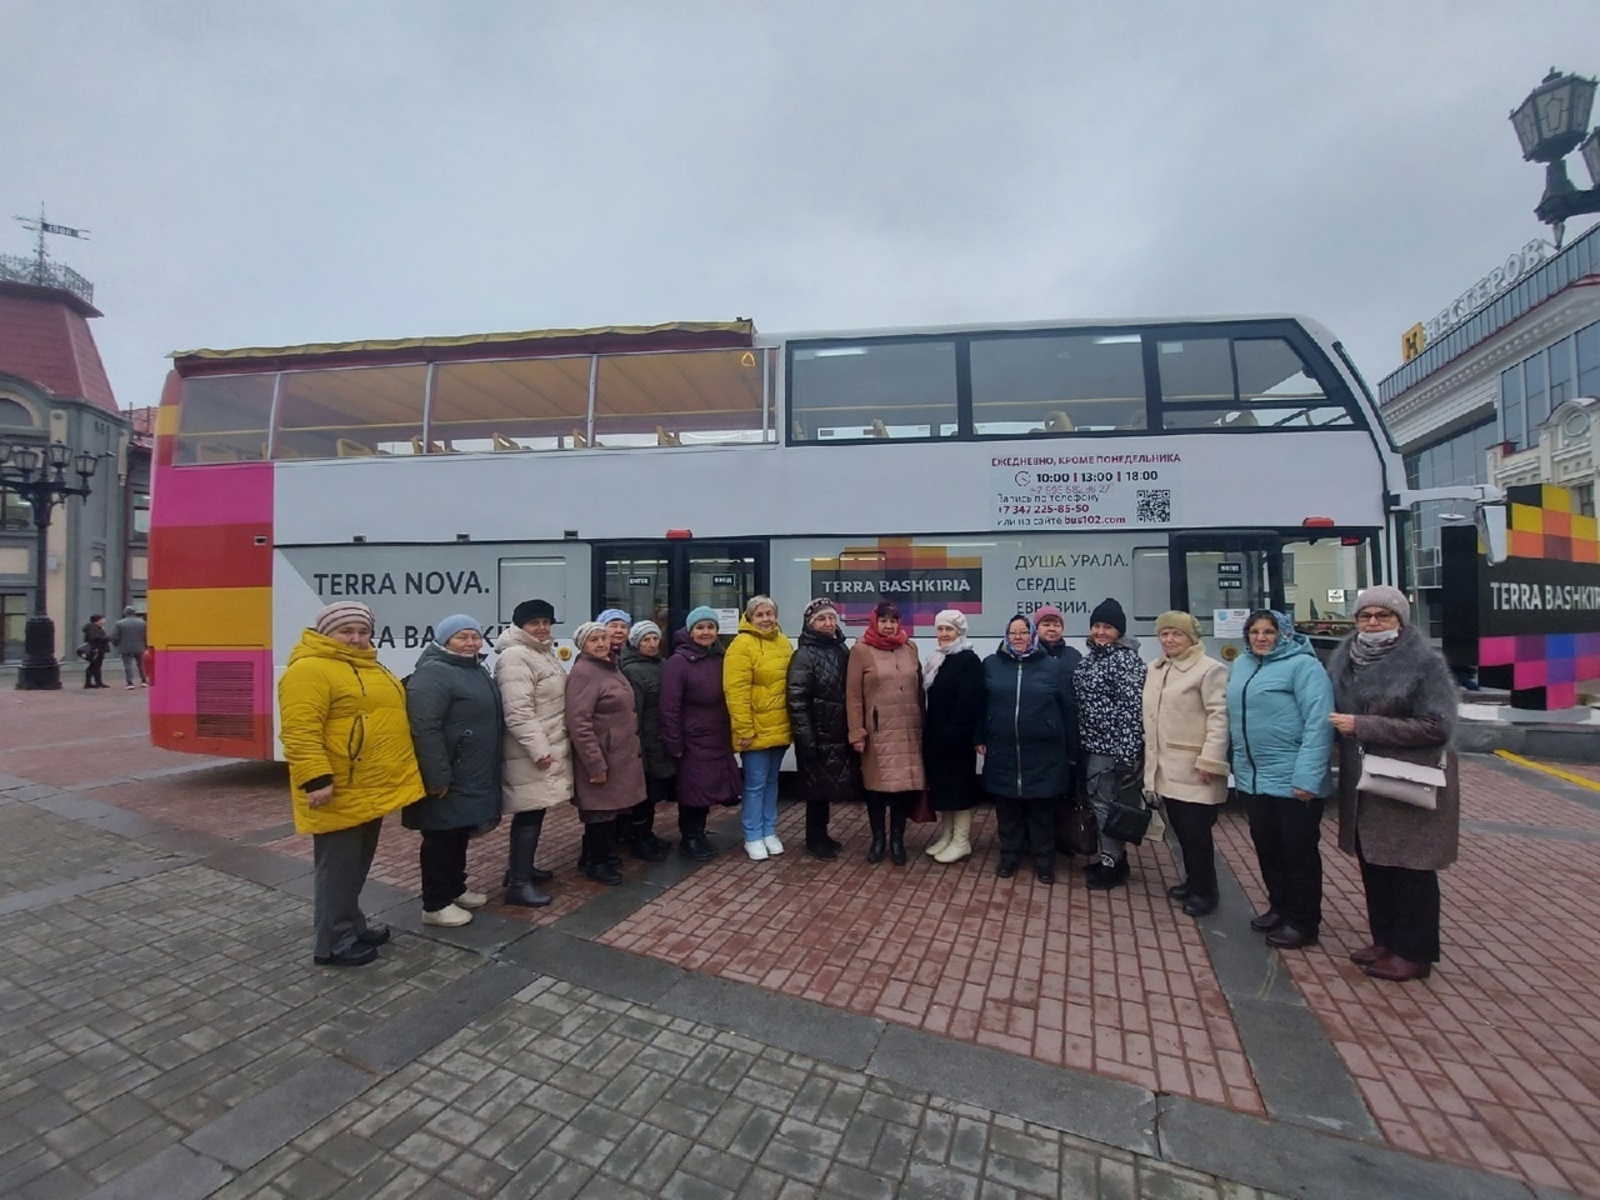 Участники проекта "Башкирское долголетие.Туризм" побывали с экскурсией в столице республики